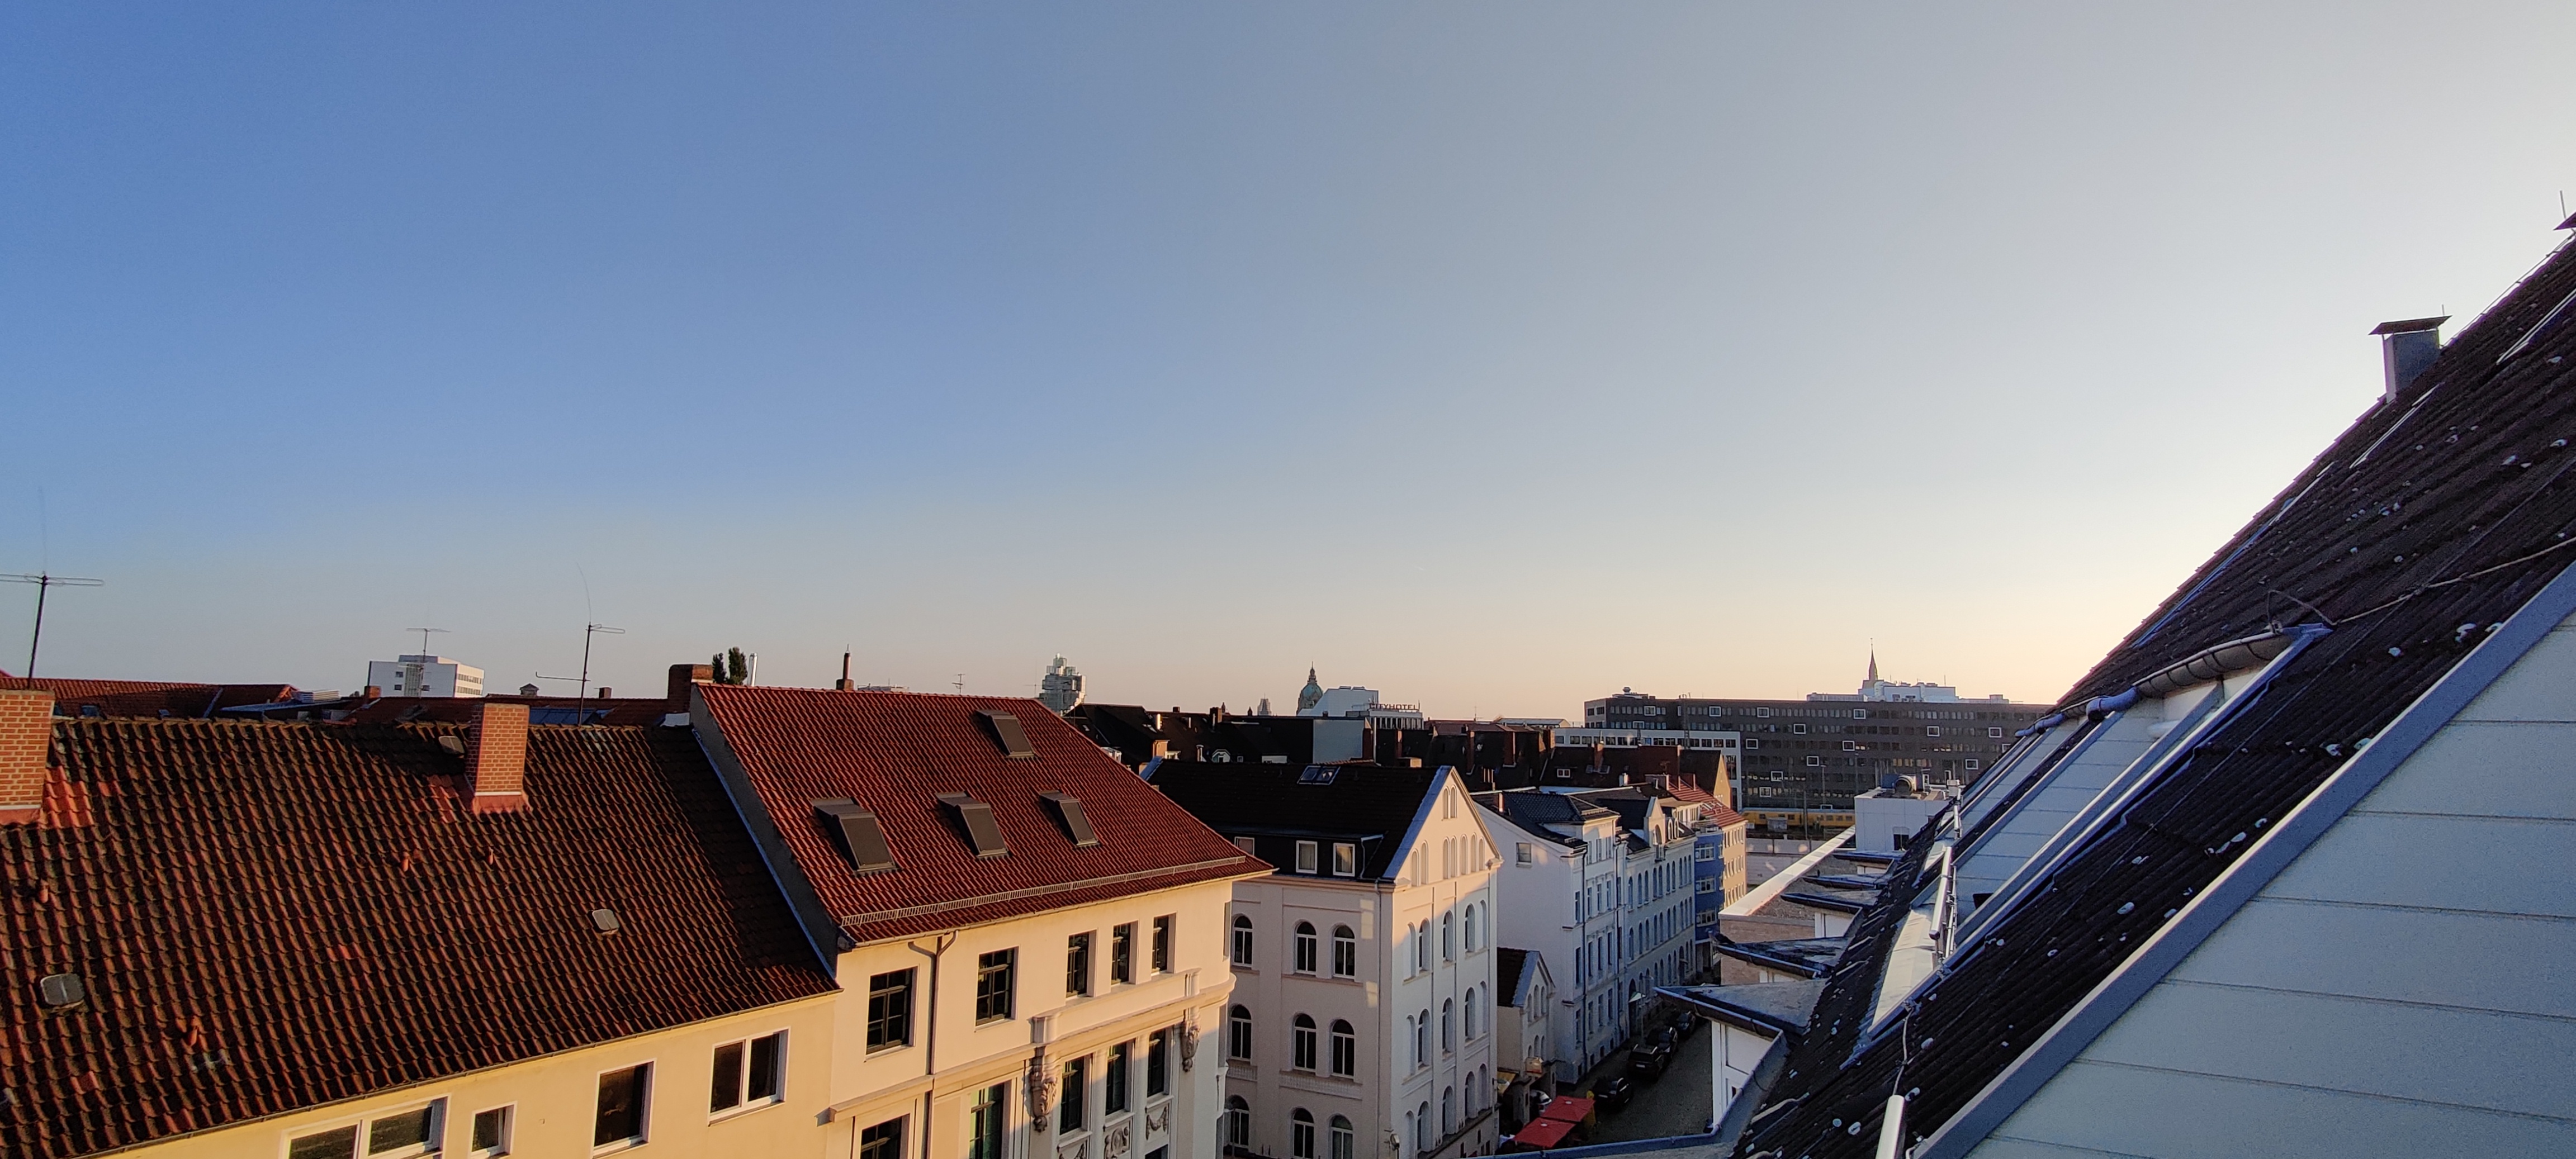 Views of Hanover